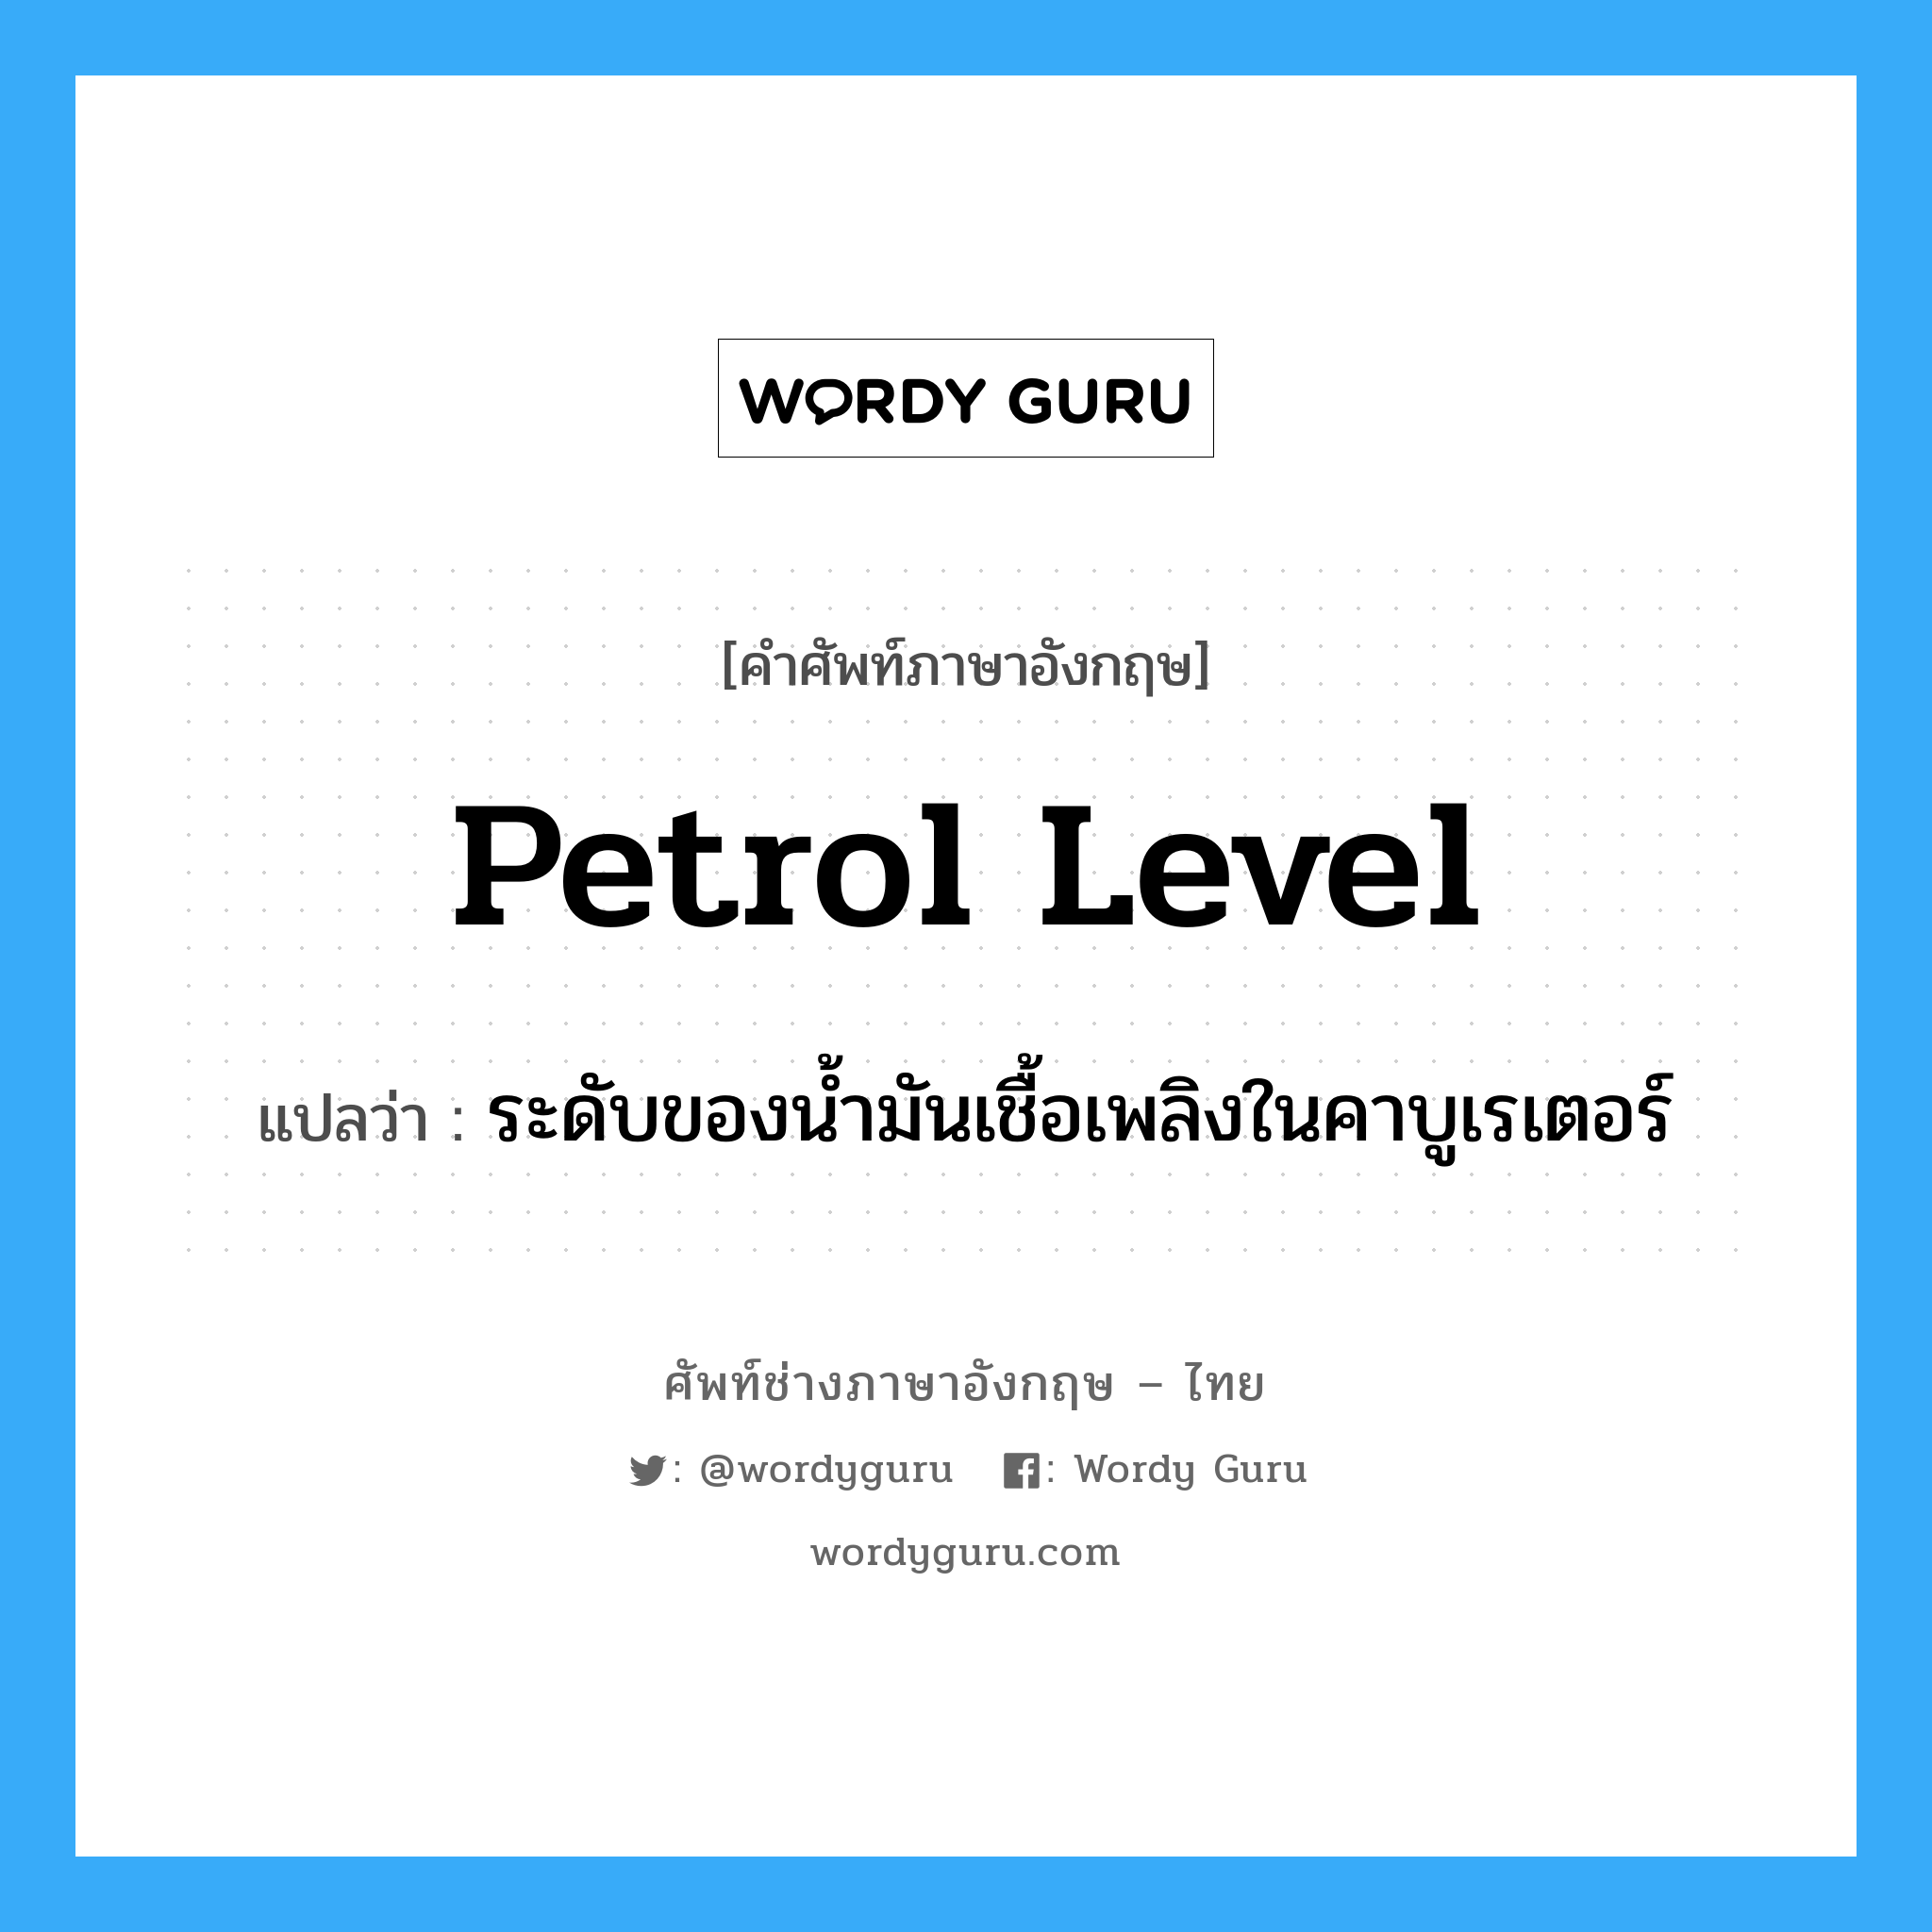 petrol level แปลว่า?, คำศัพท์ช่างภาษาอังกฤษ - ไทย petrol level คำศัพท์ภาษาอังกฤษ petrol level แปลว่า ระดับของน้ำมันเชื้อเพลิงในคาบูเรเตอร์